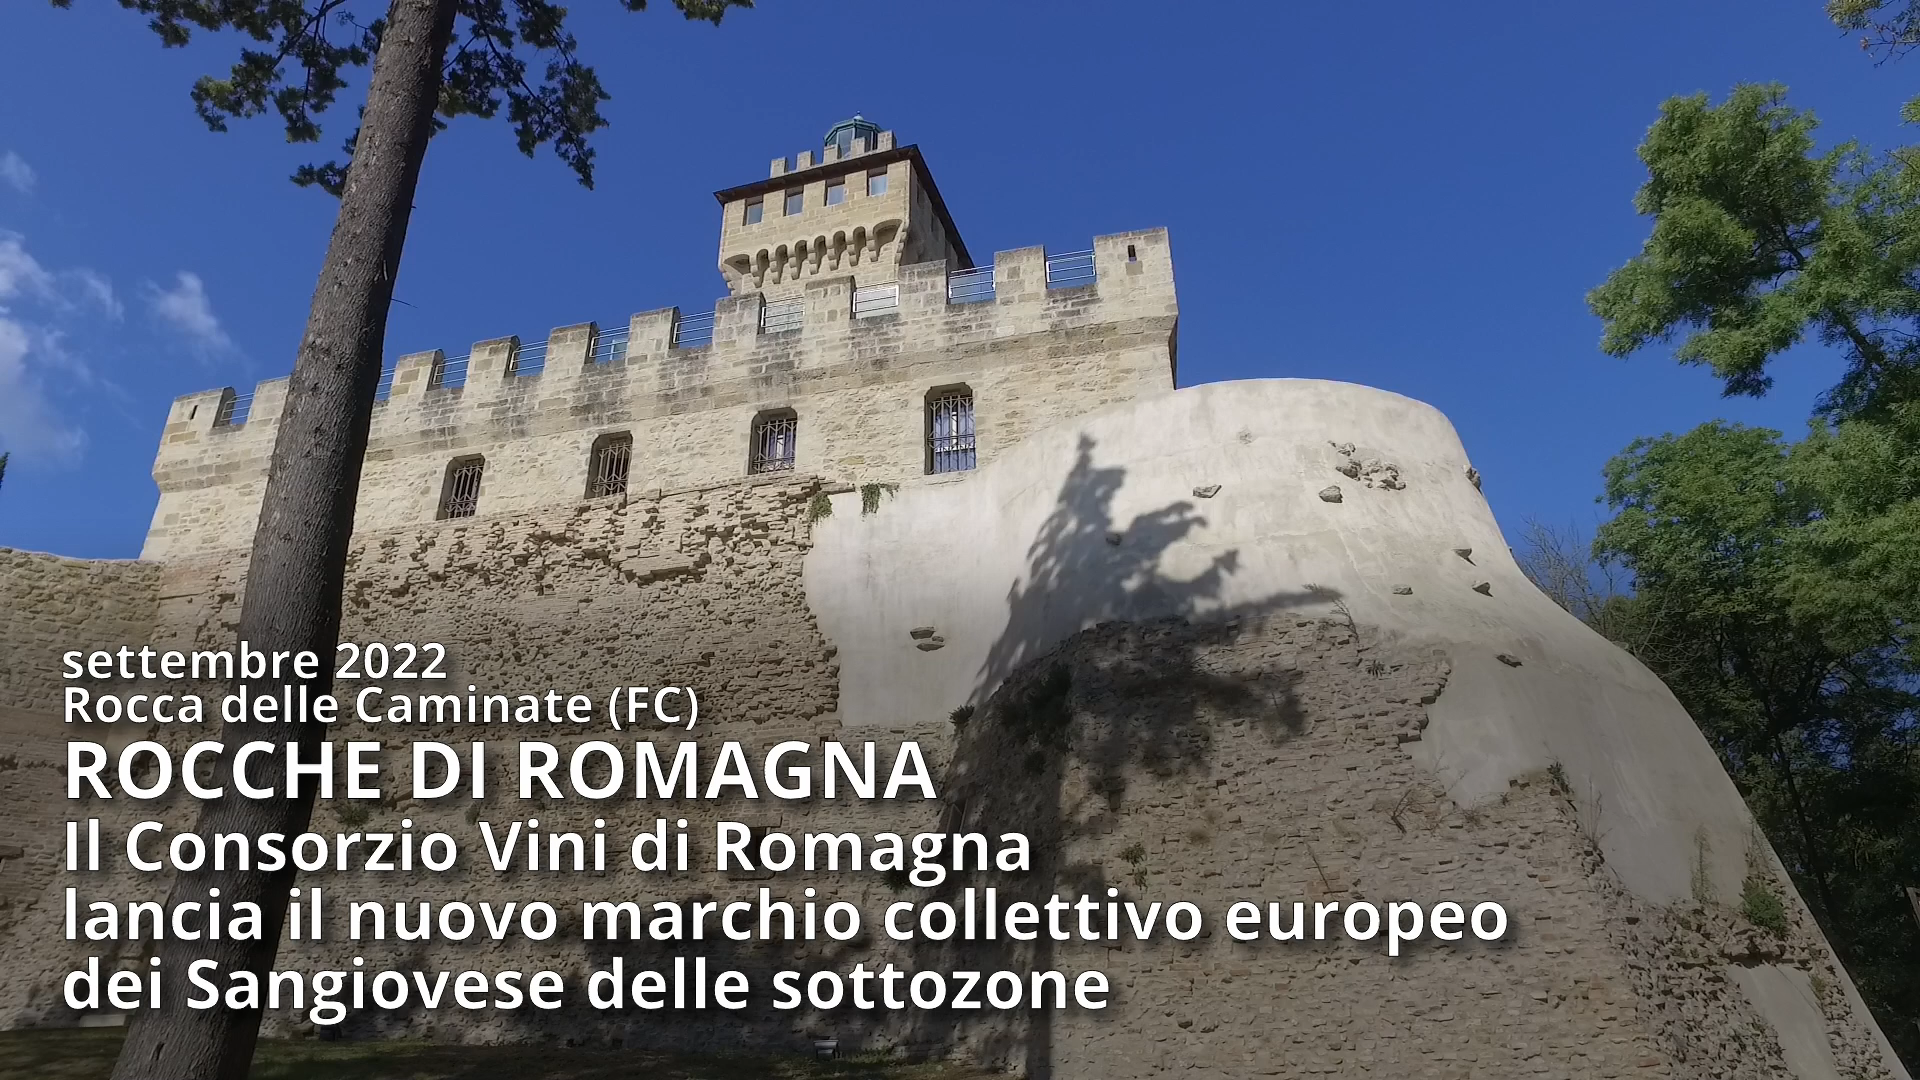 ROCCHE DI ROMAGNA: Il Consorzio Vini di Romagna lancia il nuovo marchio collettivo europeo dei Sangiovese delle sottozone – 10 min